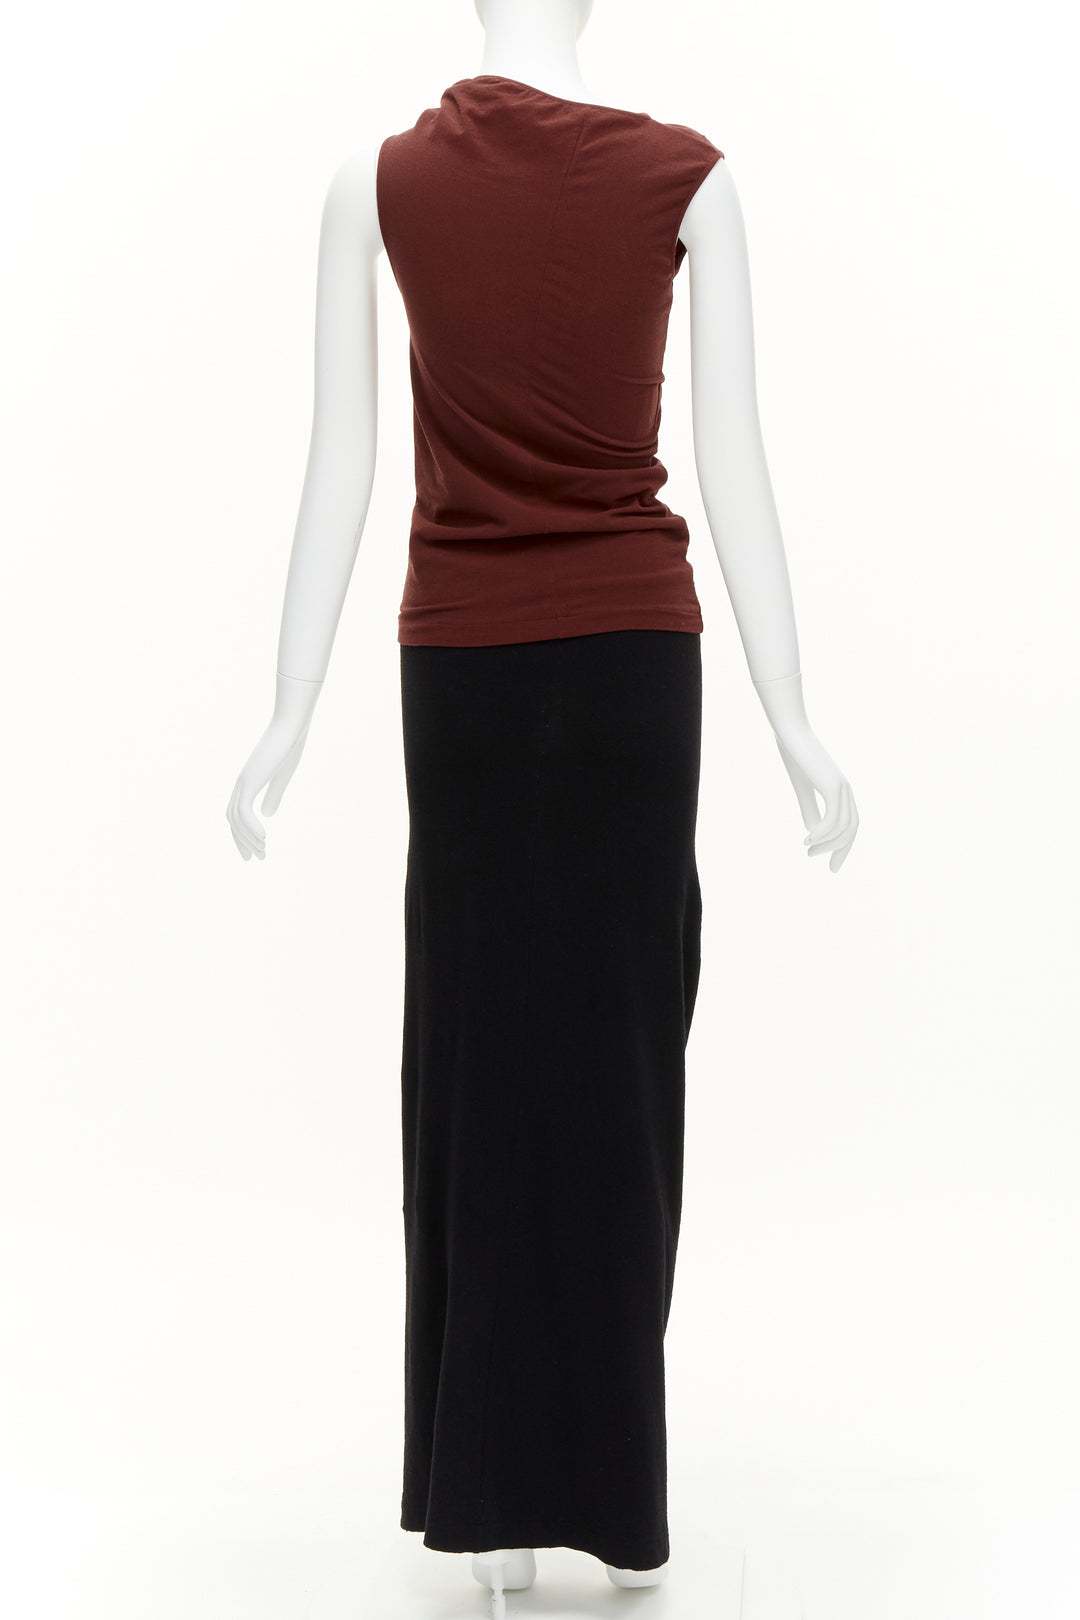 COMME DES GARCONS Vintage 1997 Lumps & Bumps red asymmetric top black skirt M